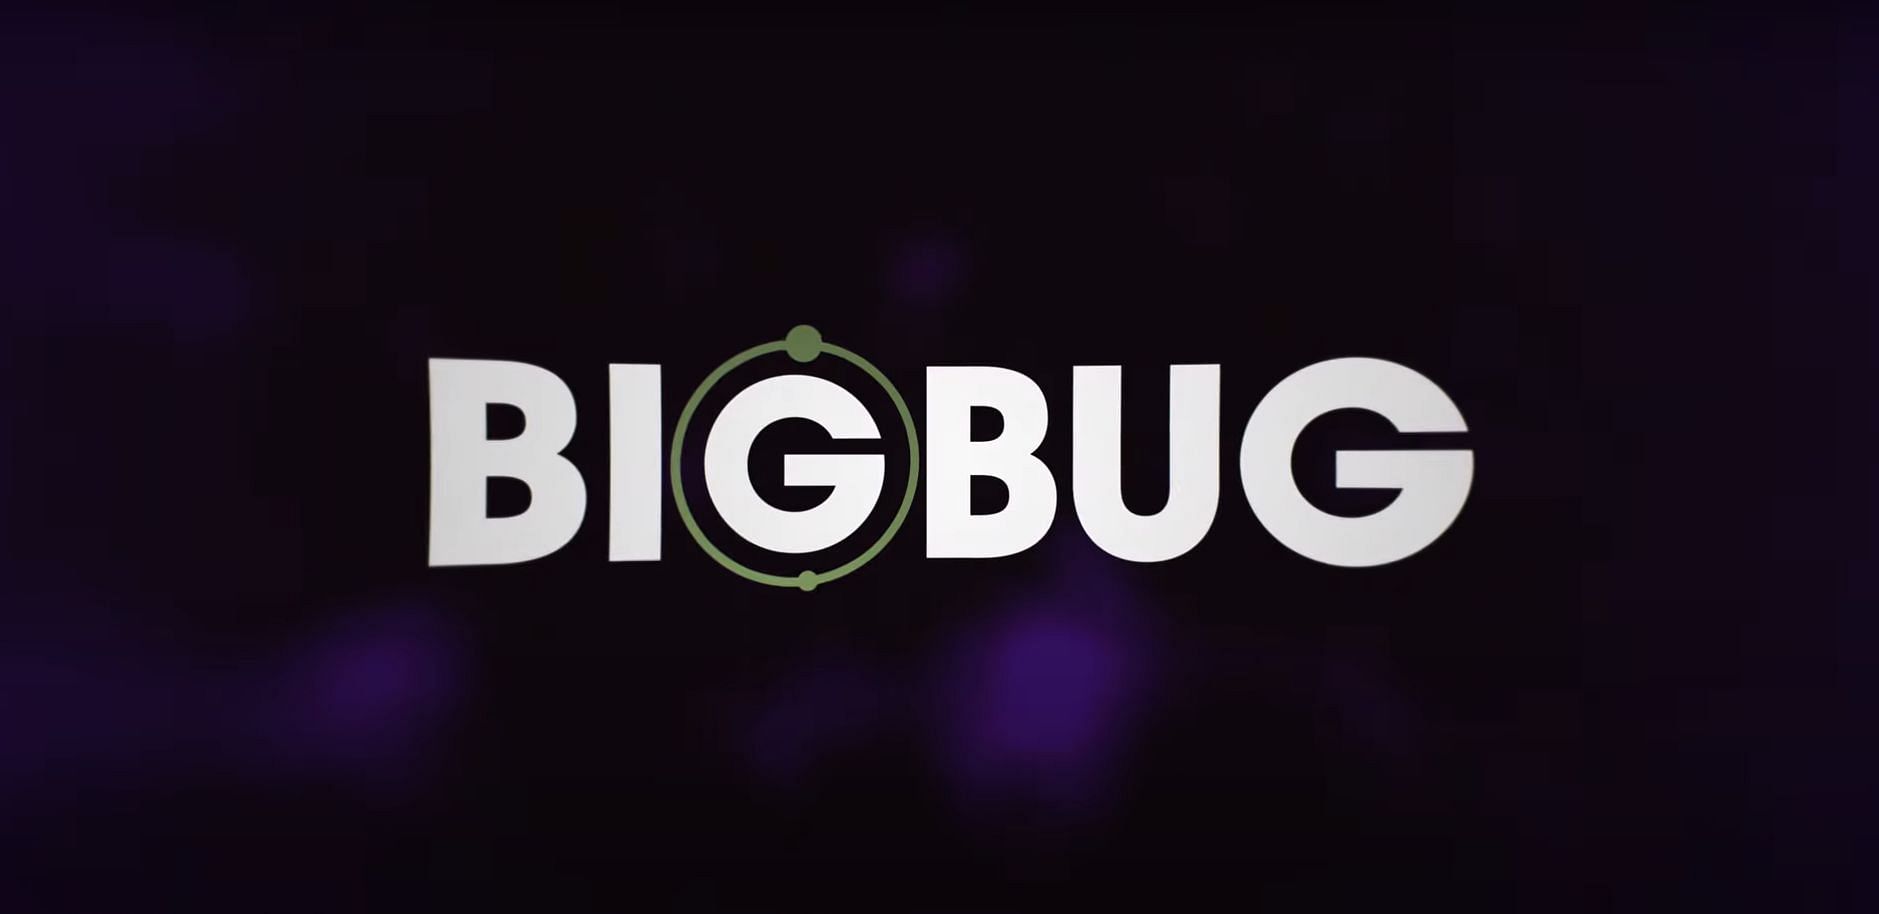 Bigbug (Image via Netflix)